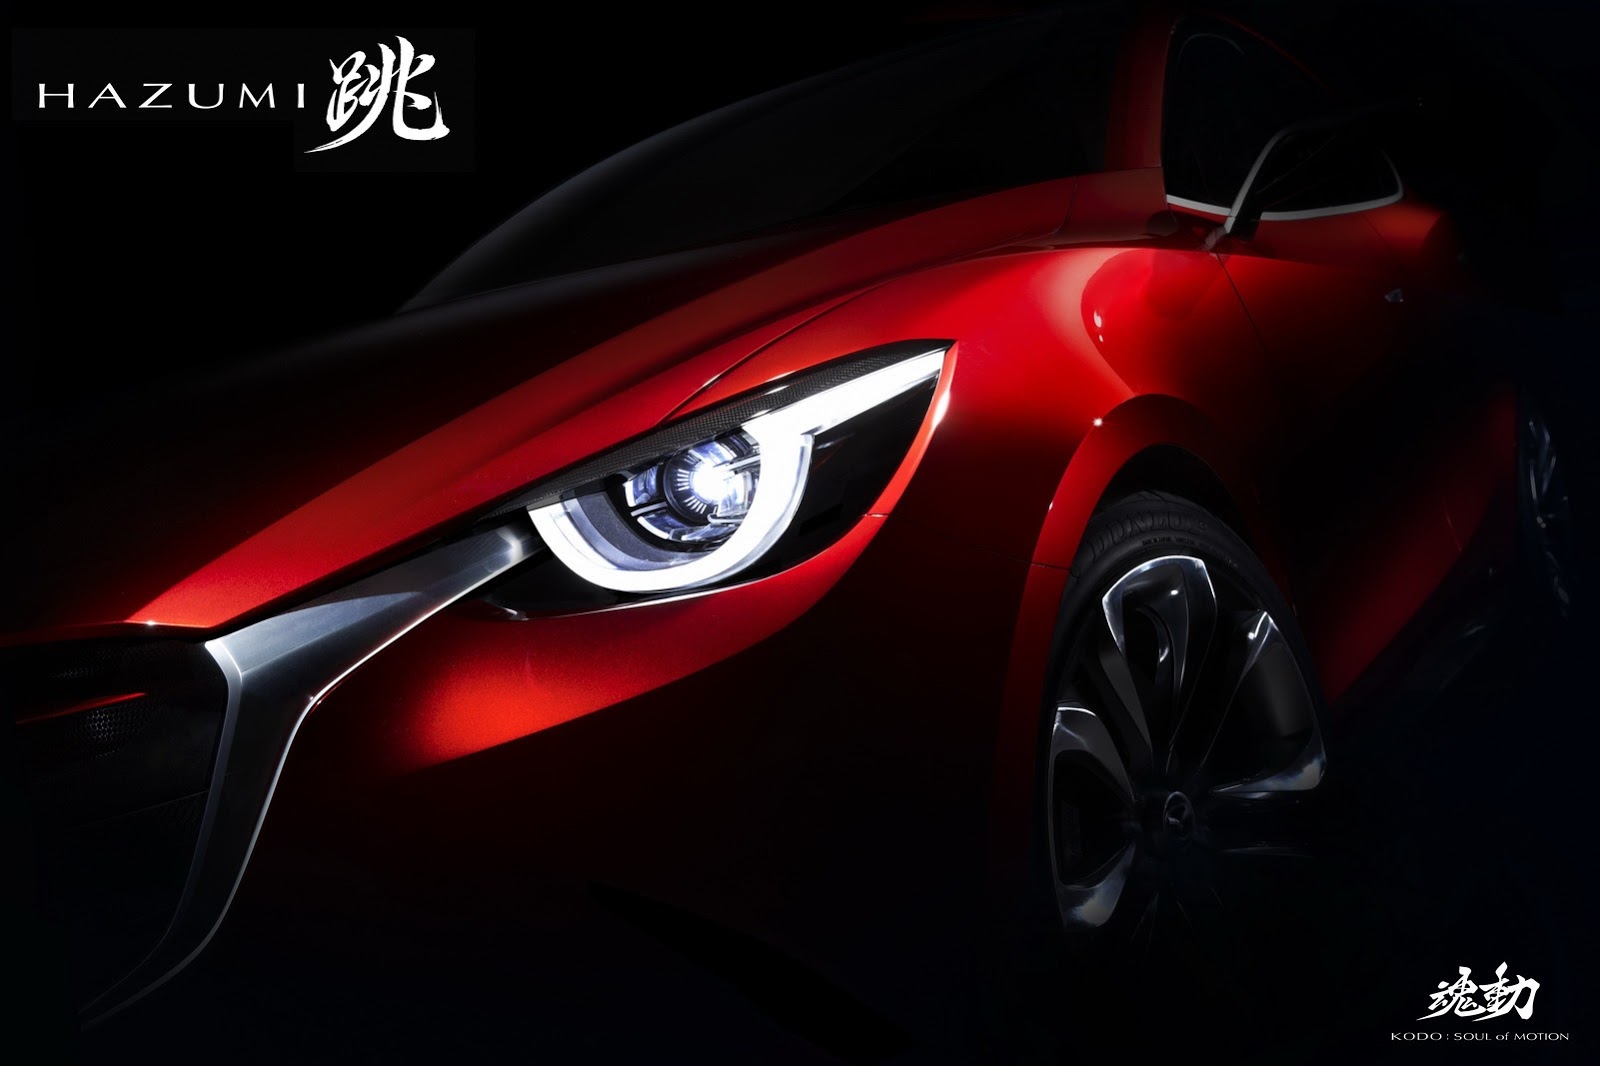 Mazda-Hazumi-2%25255B3%25255D.jpg